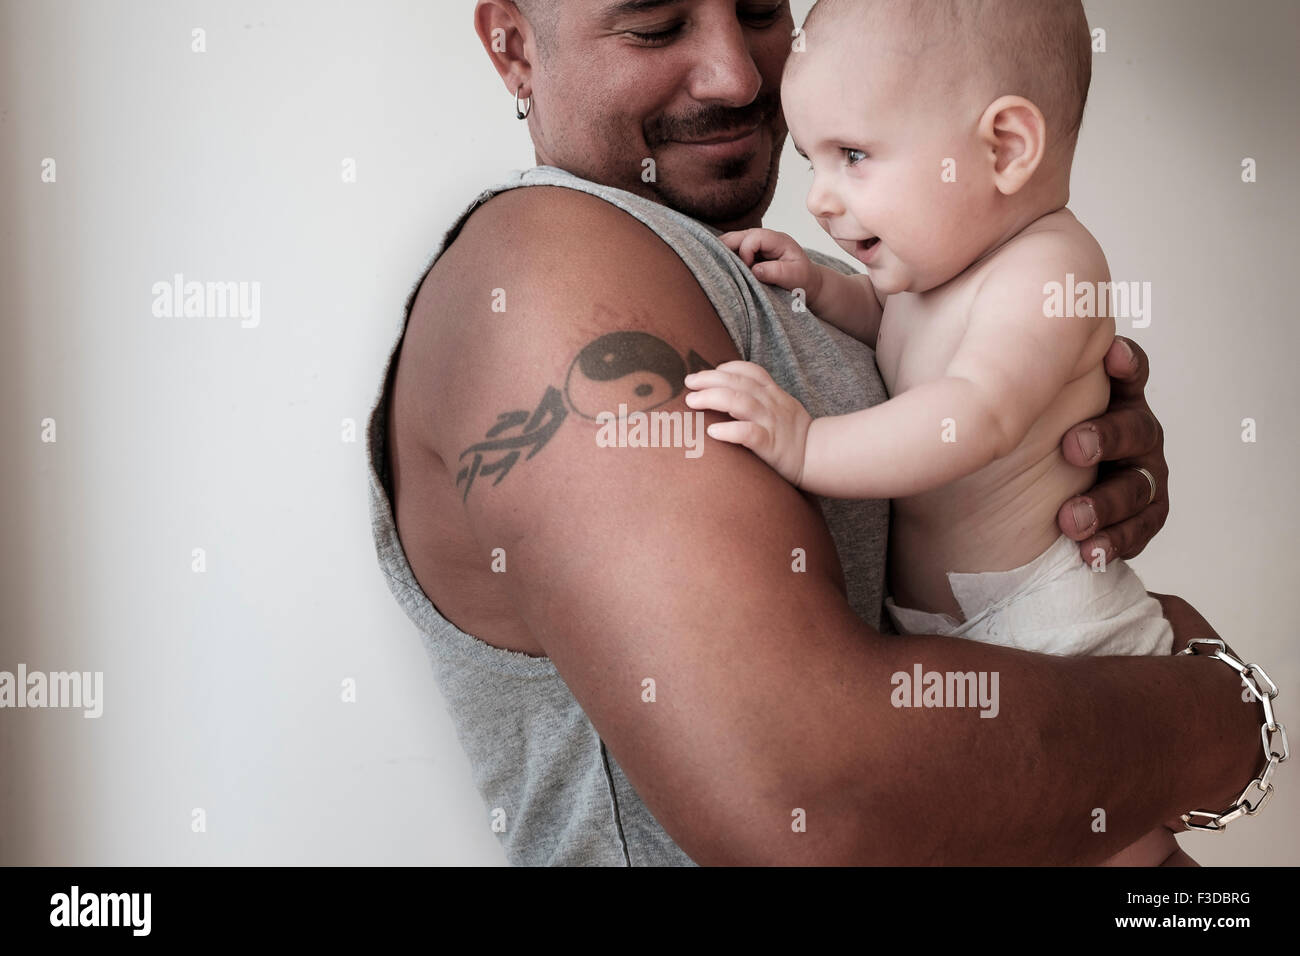 Foto de estudio de la niña (2-5 meses) con su padre Foto de stock